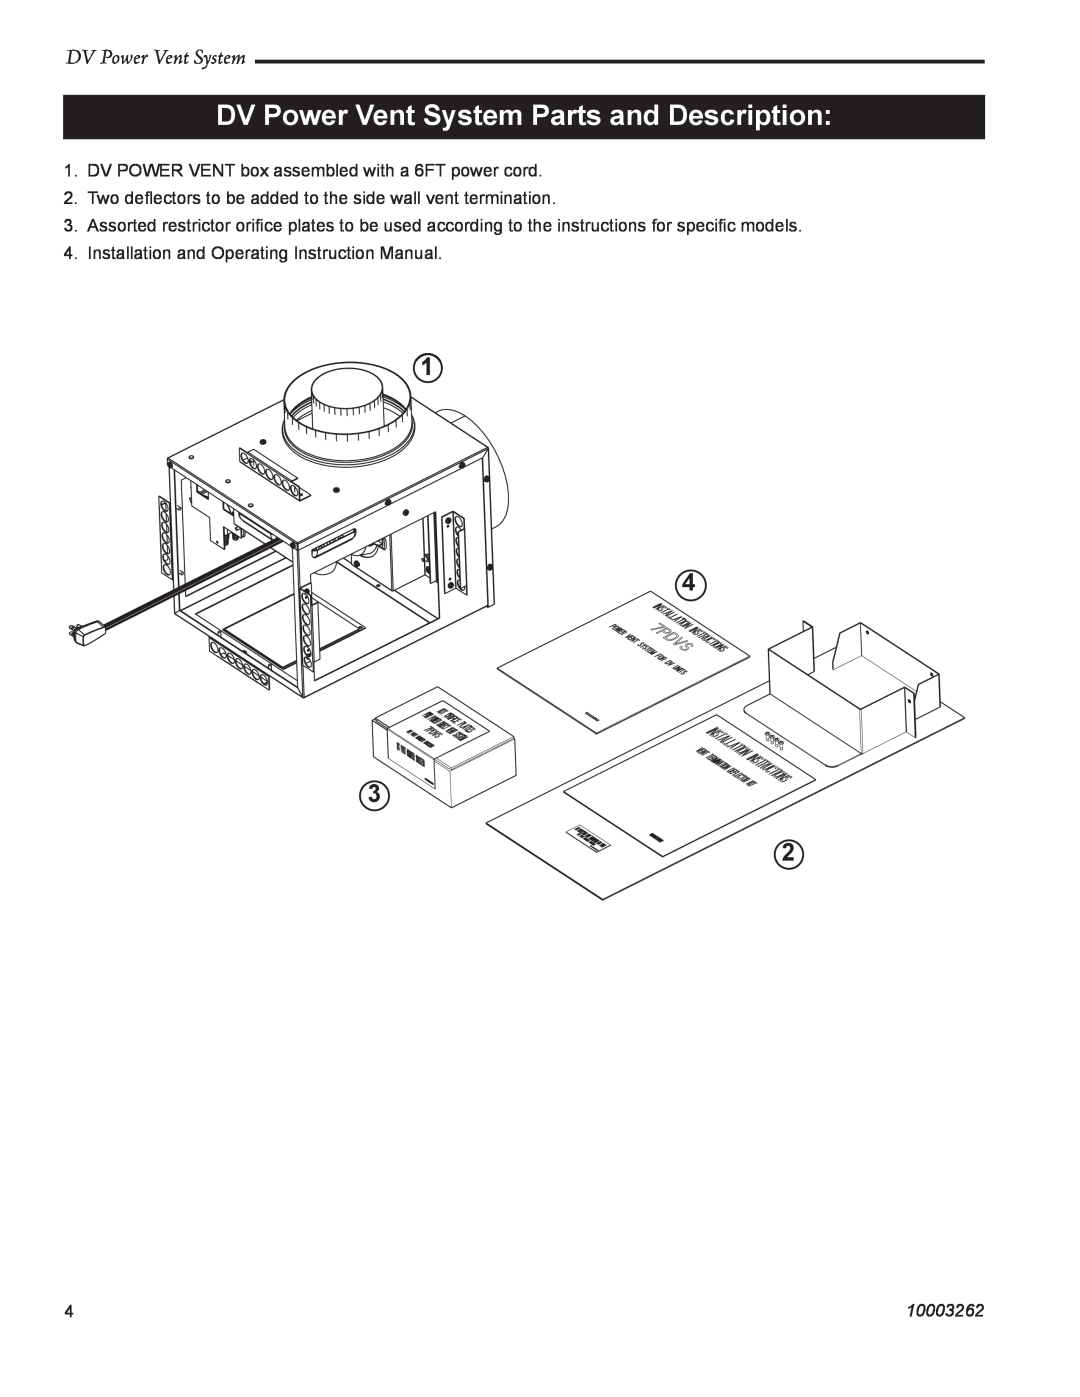 Vermont Casting 7PDVS manual DV Power Vent System Parts and Description, 10003262 